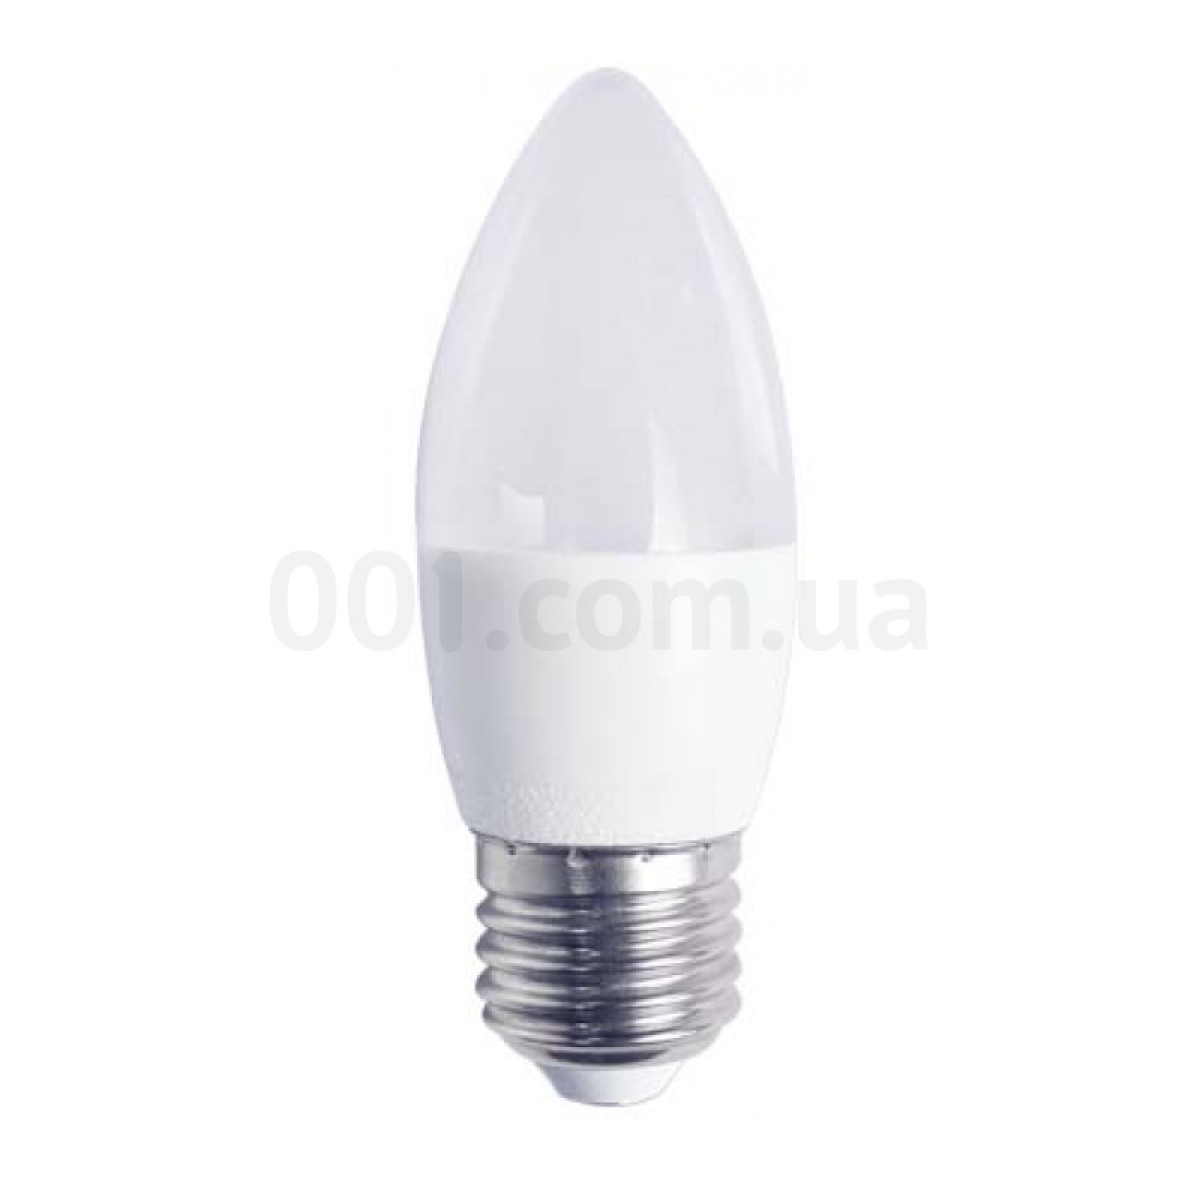 Светодиодная лампа LB-737 C37 (свеча) 6Вт 4000K E27, Feron 98_98.jpg